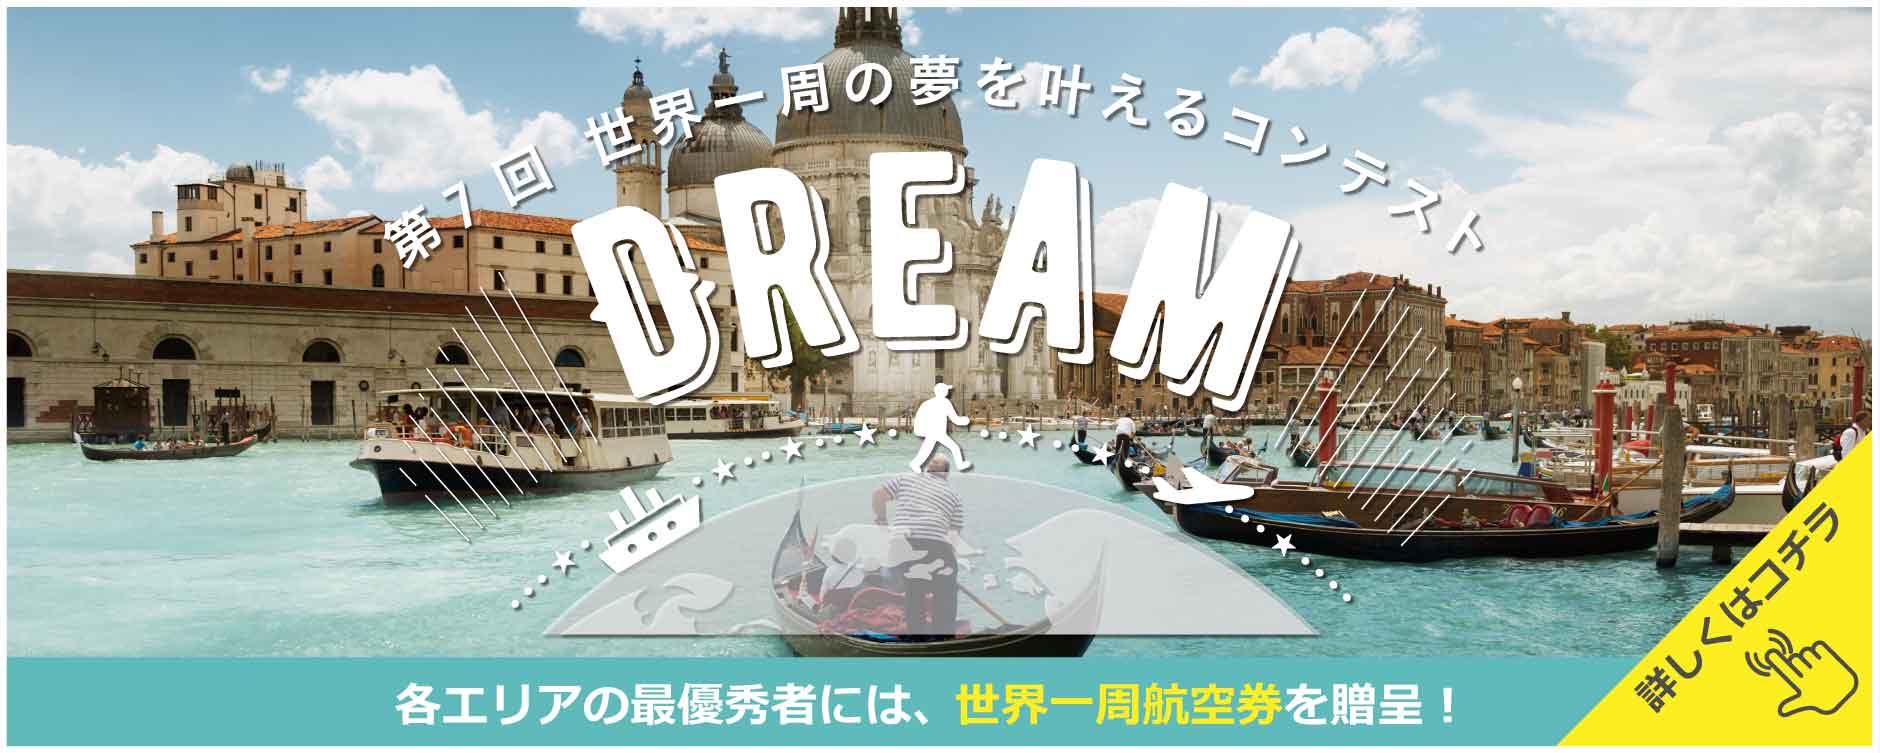 夢の世界一周航空券を3名に贈呈！第7回 世界一周の夢が叶うコンテストDREAMを開催！